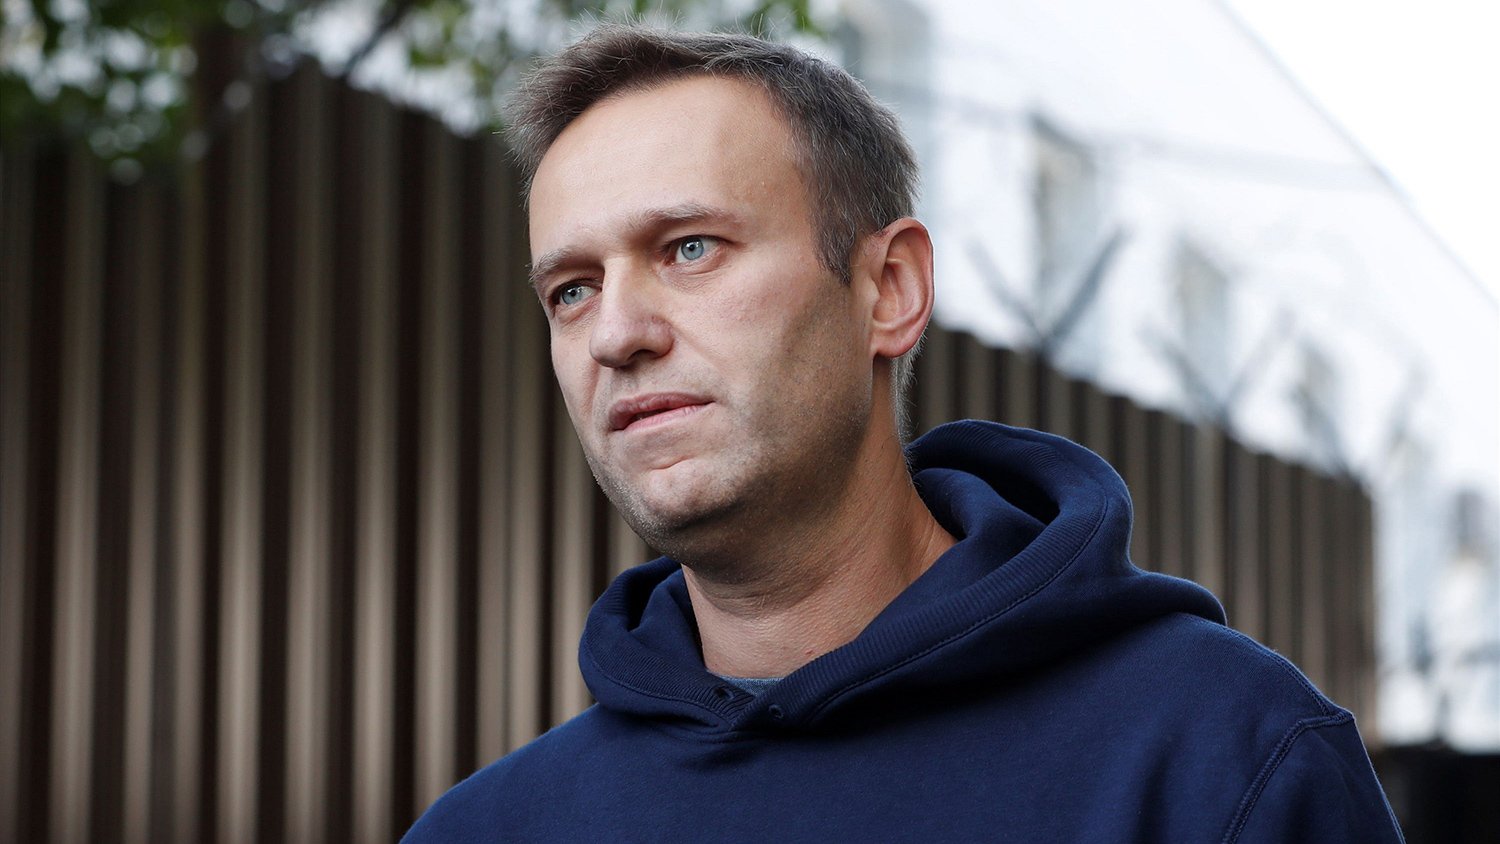 МИД России угрожает Германии из-за Навального: что происходит в отношениях двух стран